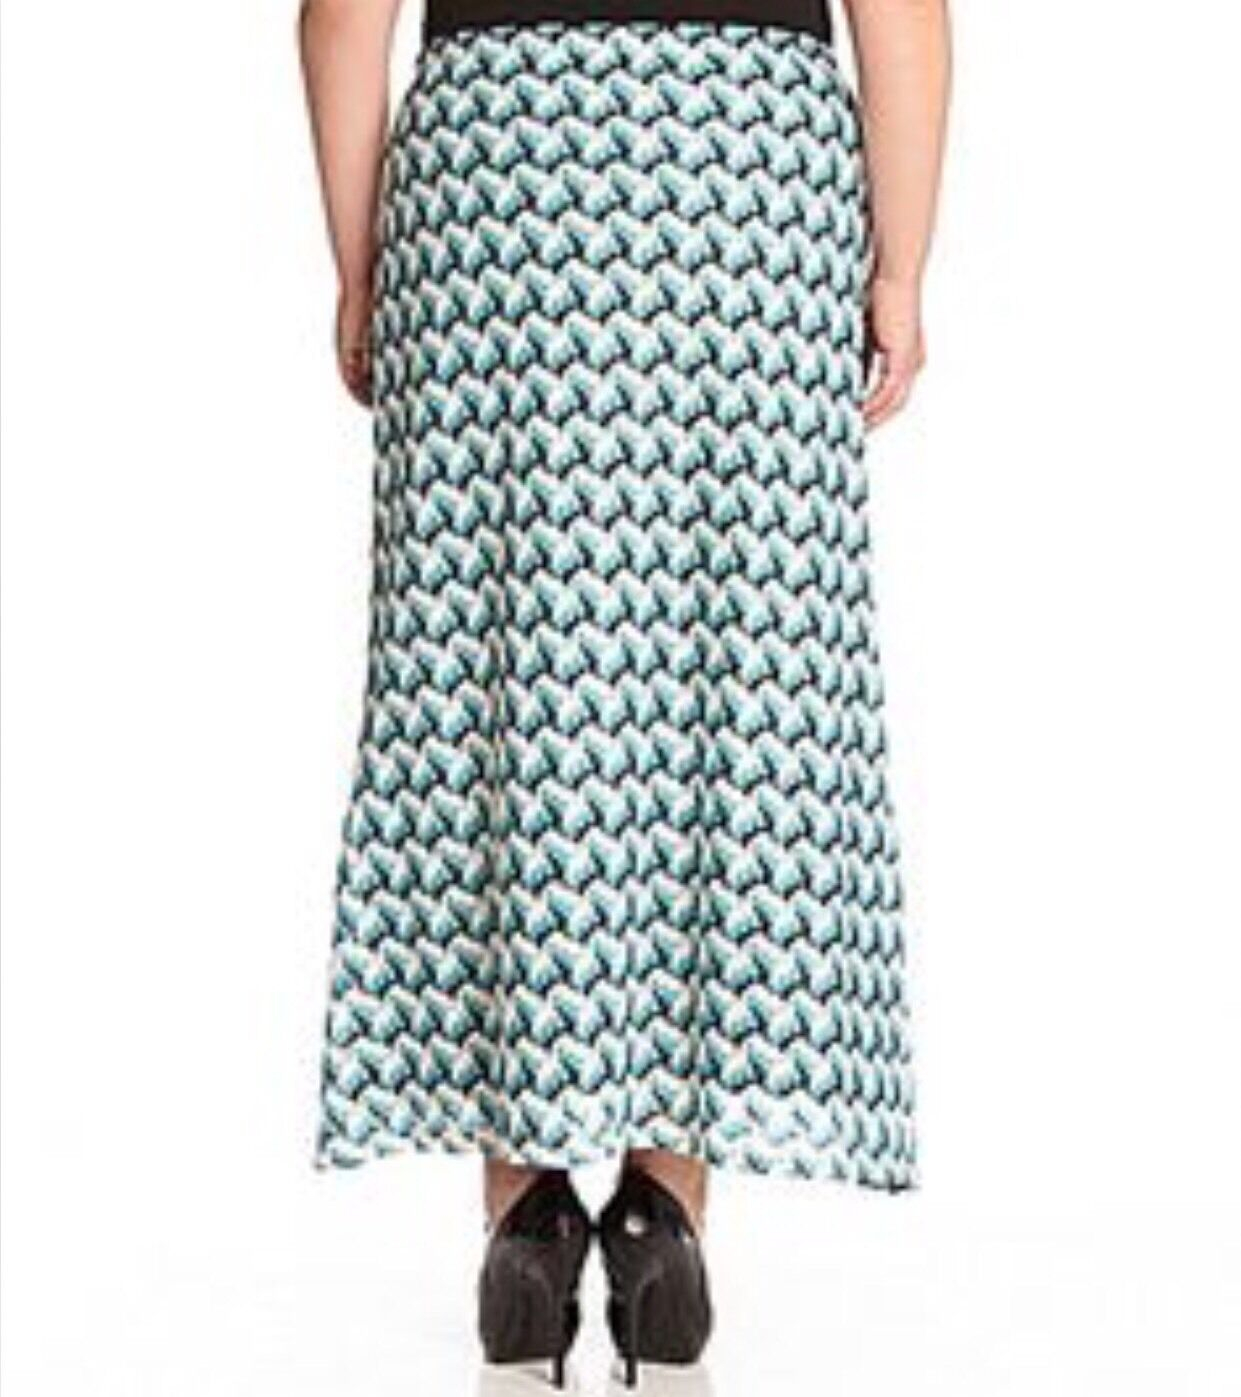 Crochet Maxi Skirt Pattern Buy Karen Kane 8323 Womens Crochet Pattern Long Maxi Skirt Plus Bhfo